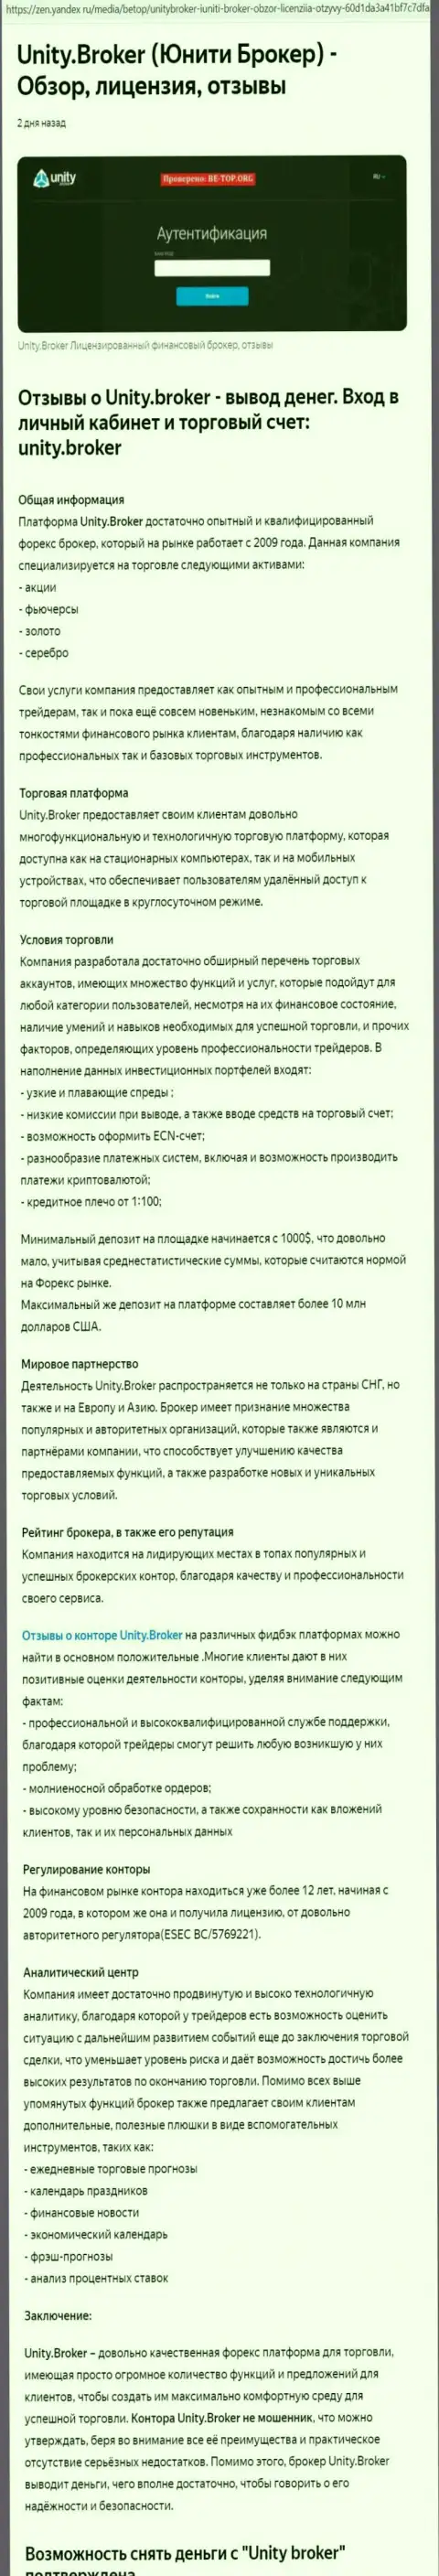 Обзор ФОРЕКС брокера Unity Broker на информационном ресурсе Яндекс Дзен